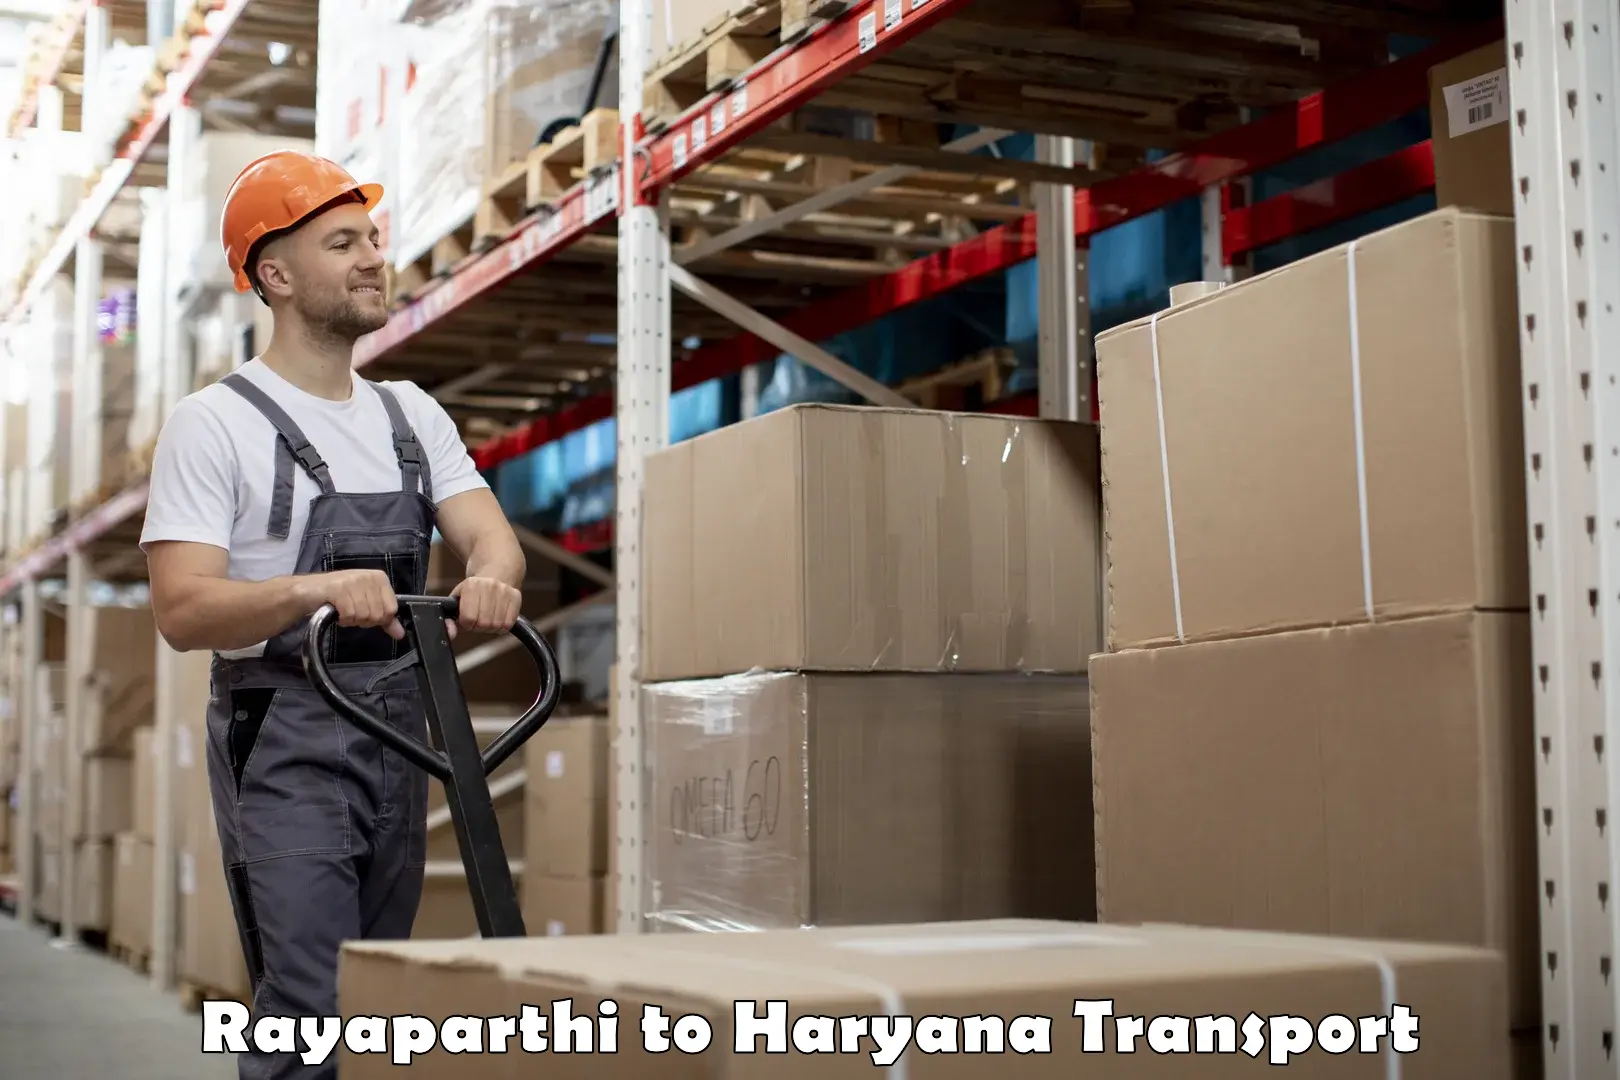 Truck transport companies in India Rayaparthi to Narwana